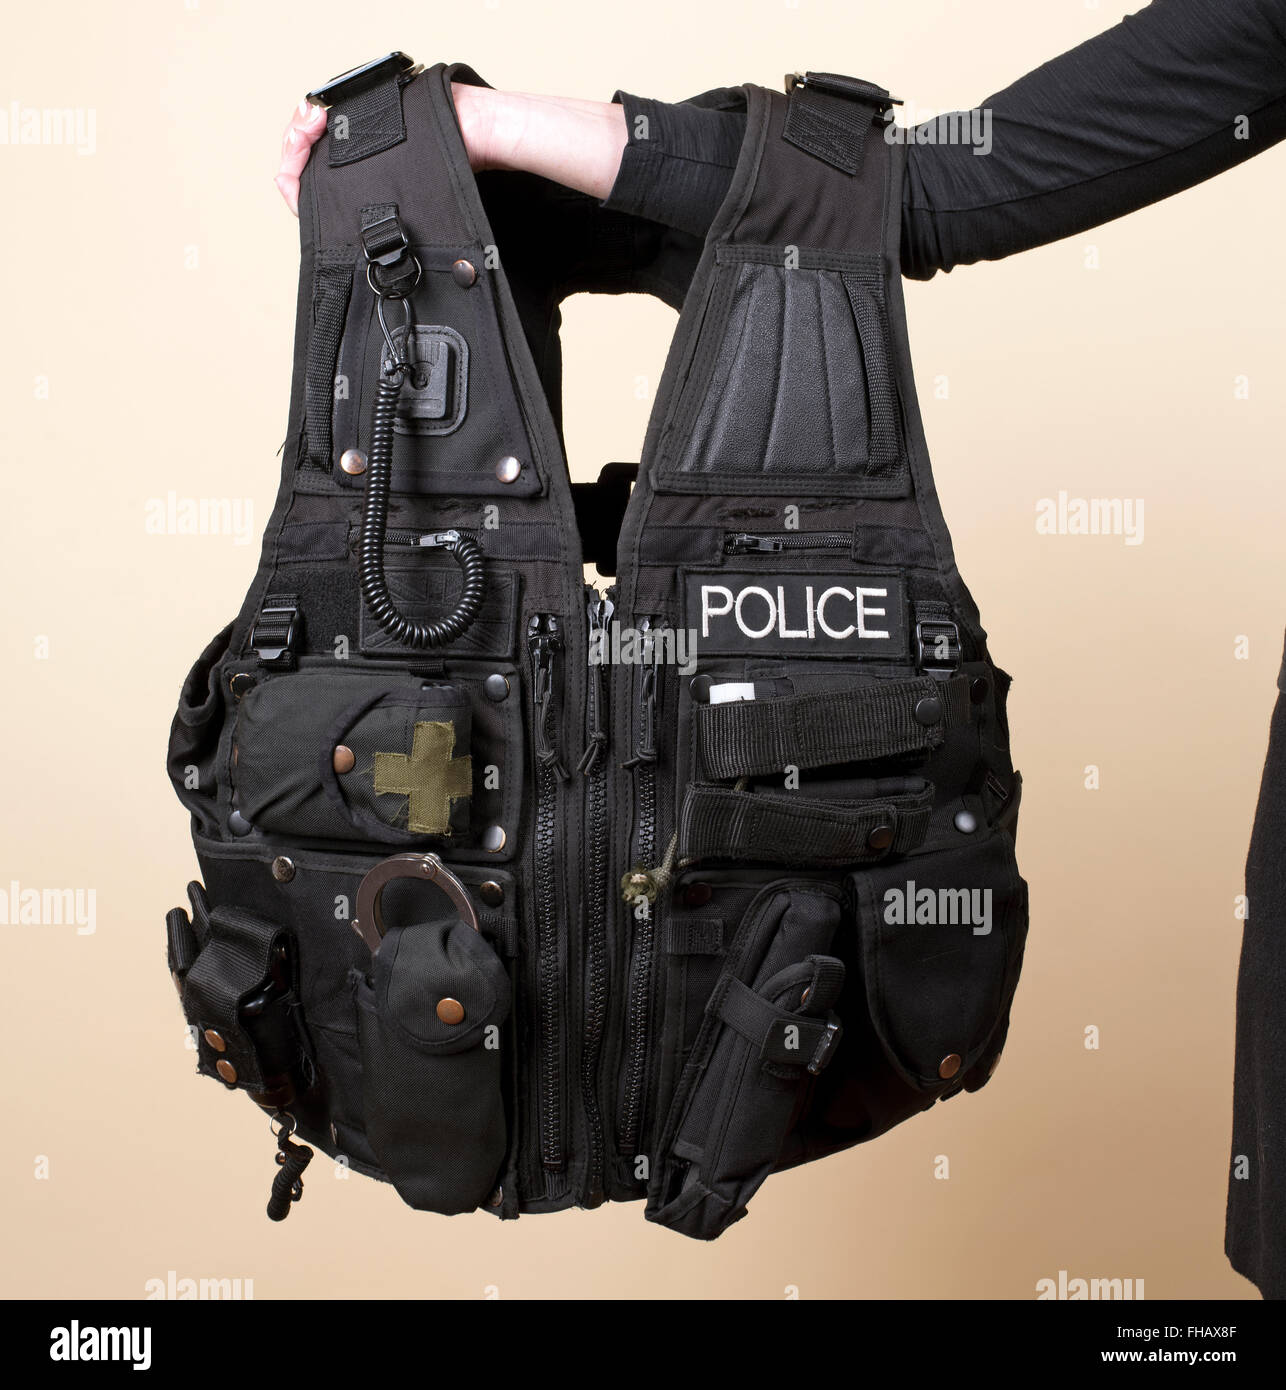 Polizei uniform eine taktische Weste Stockfotografie - Alamy